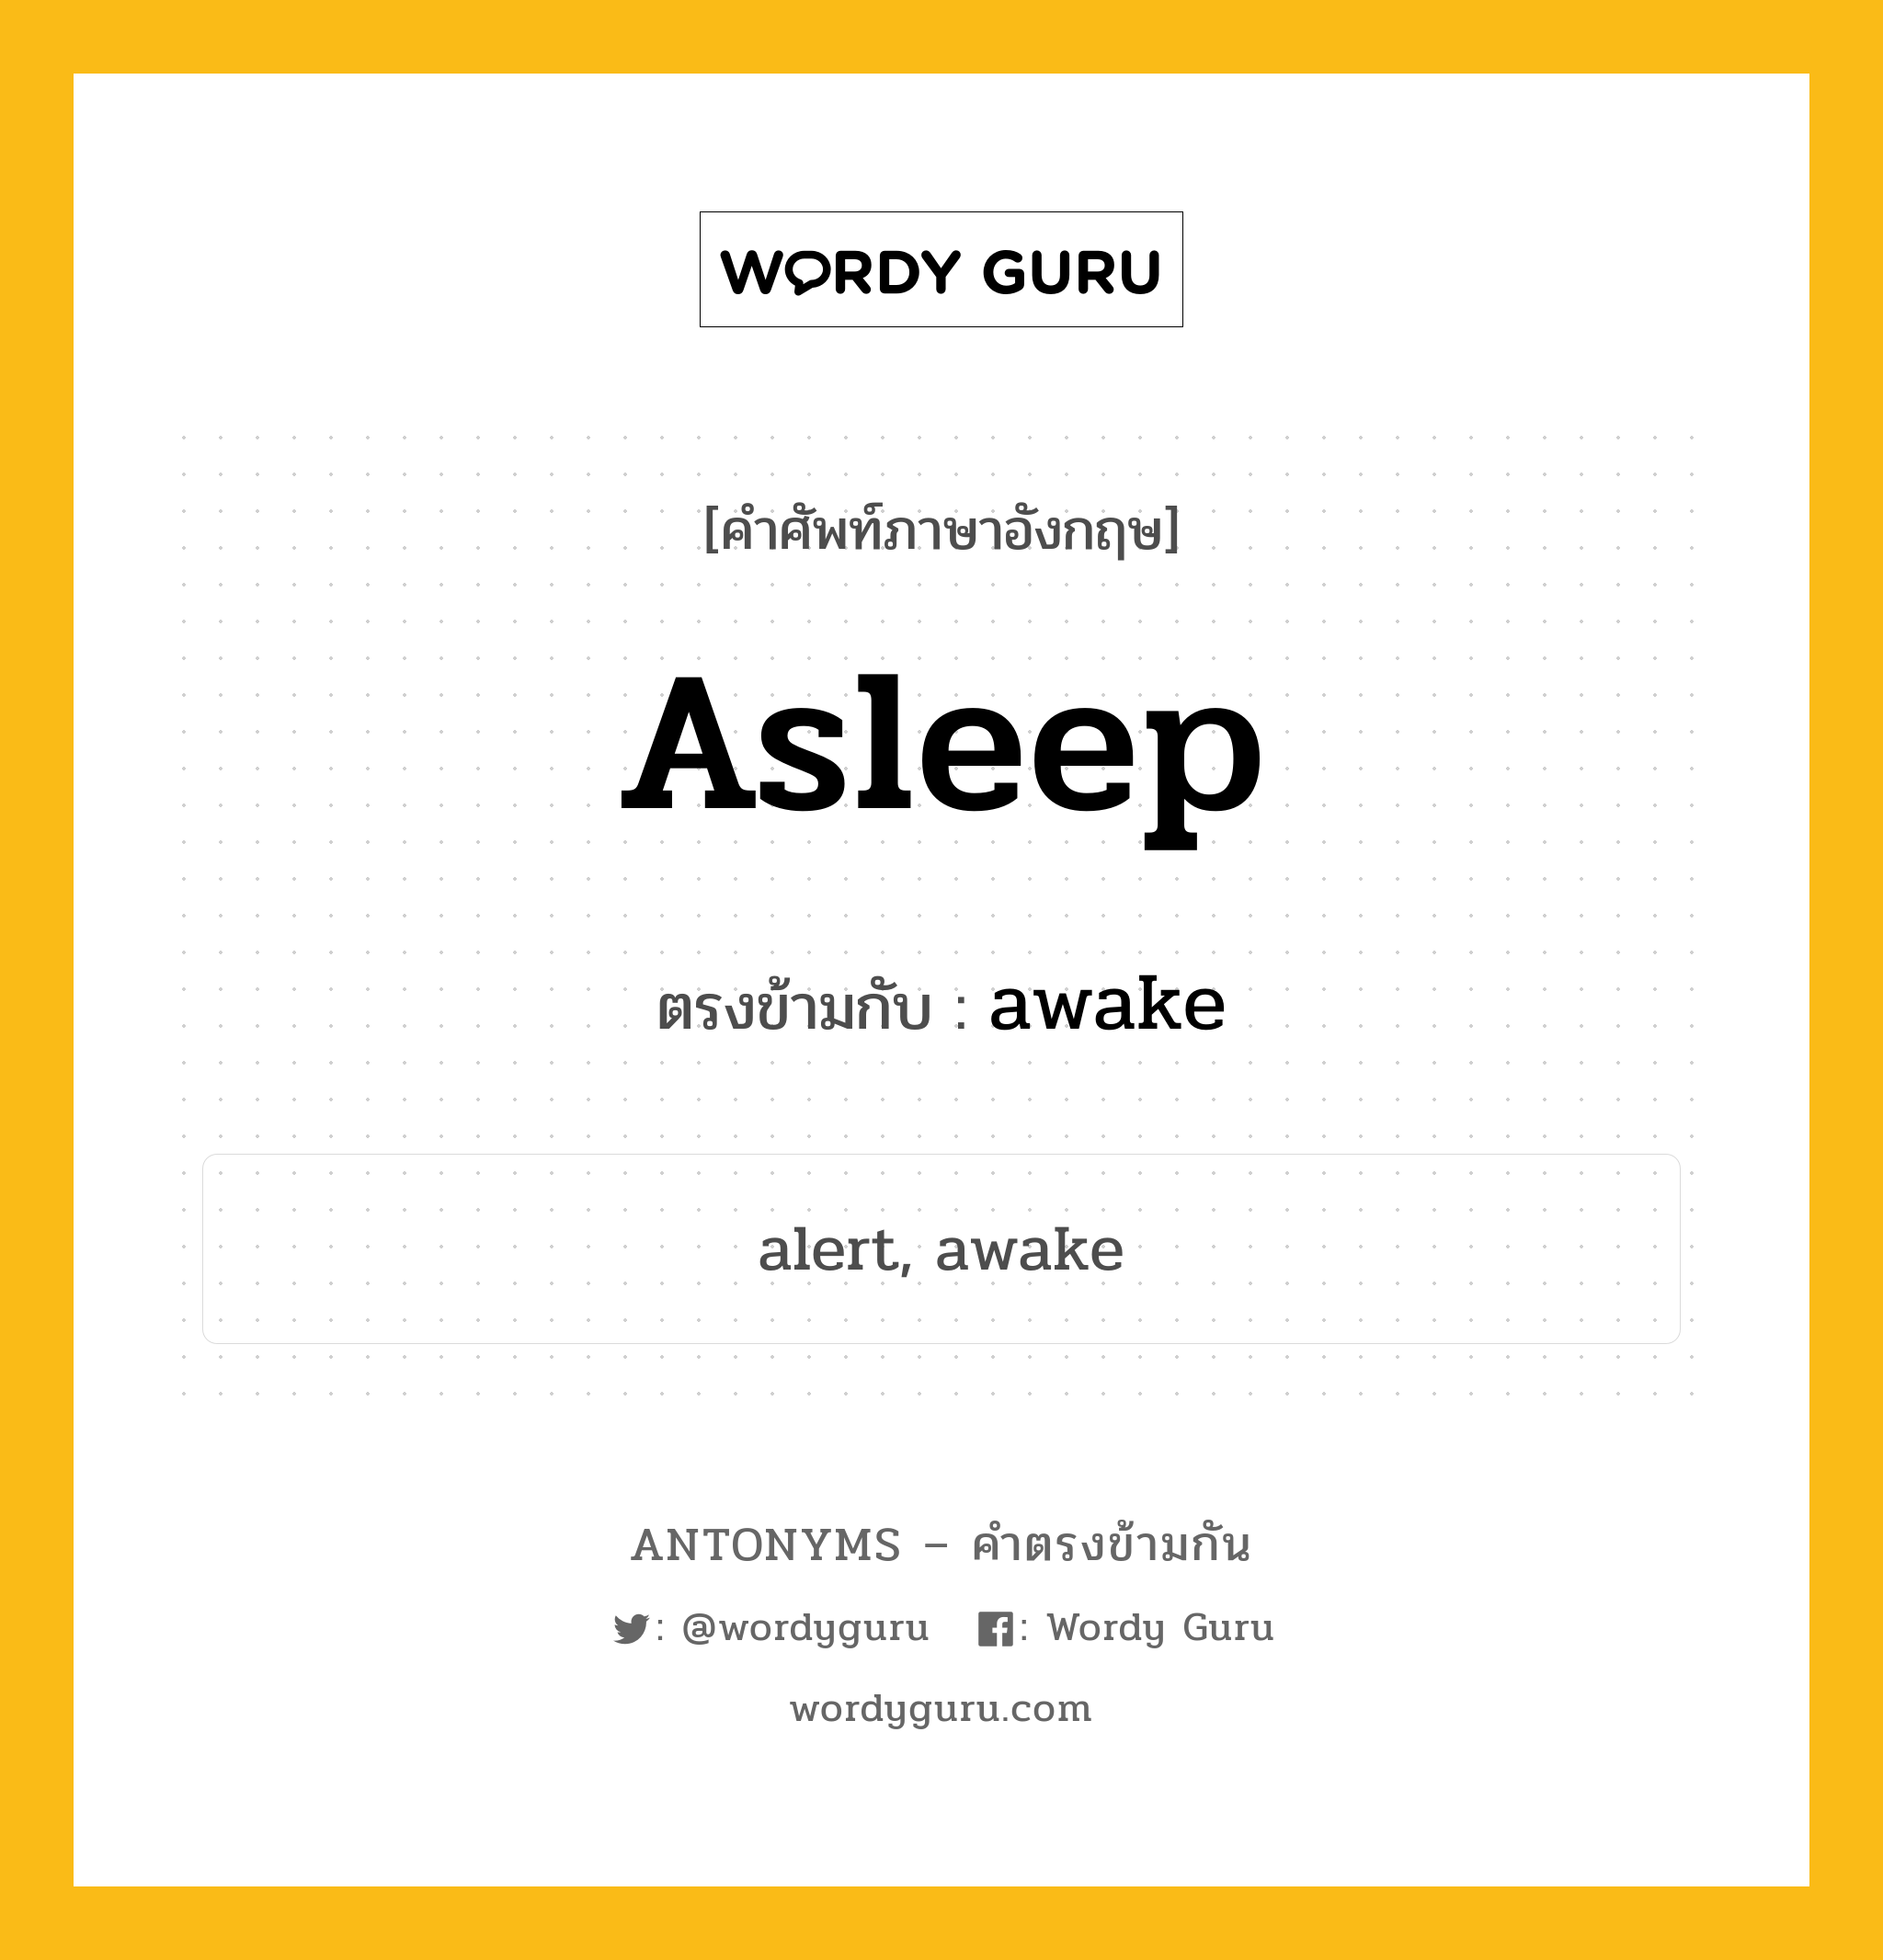 asleep เป็นคำตรงข้ามกับคำไหนบ้าง?, คำศัพท์ภาษาอังกฤษ asleep ตรงข้ามกับ awake หมวด awake